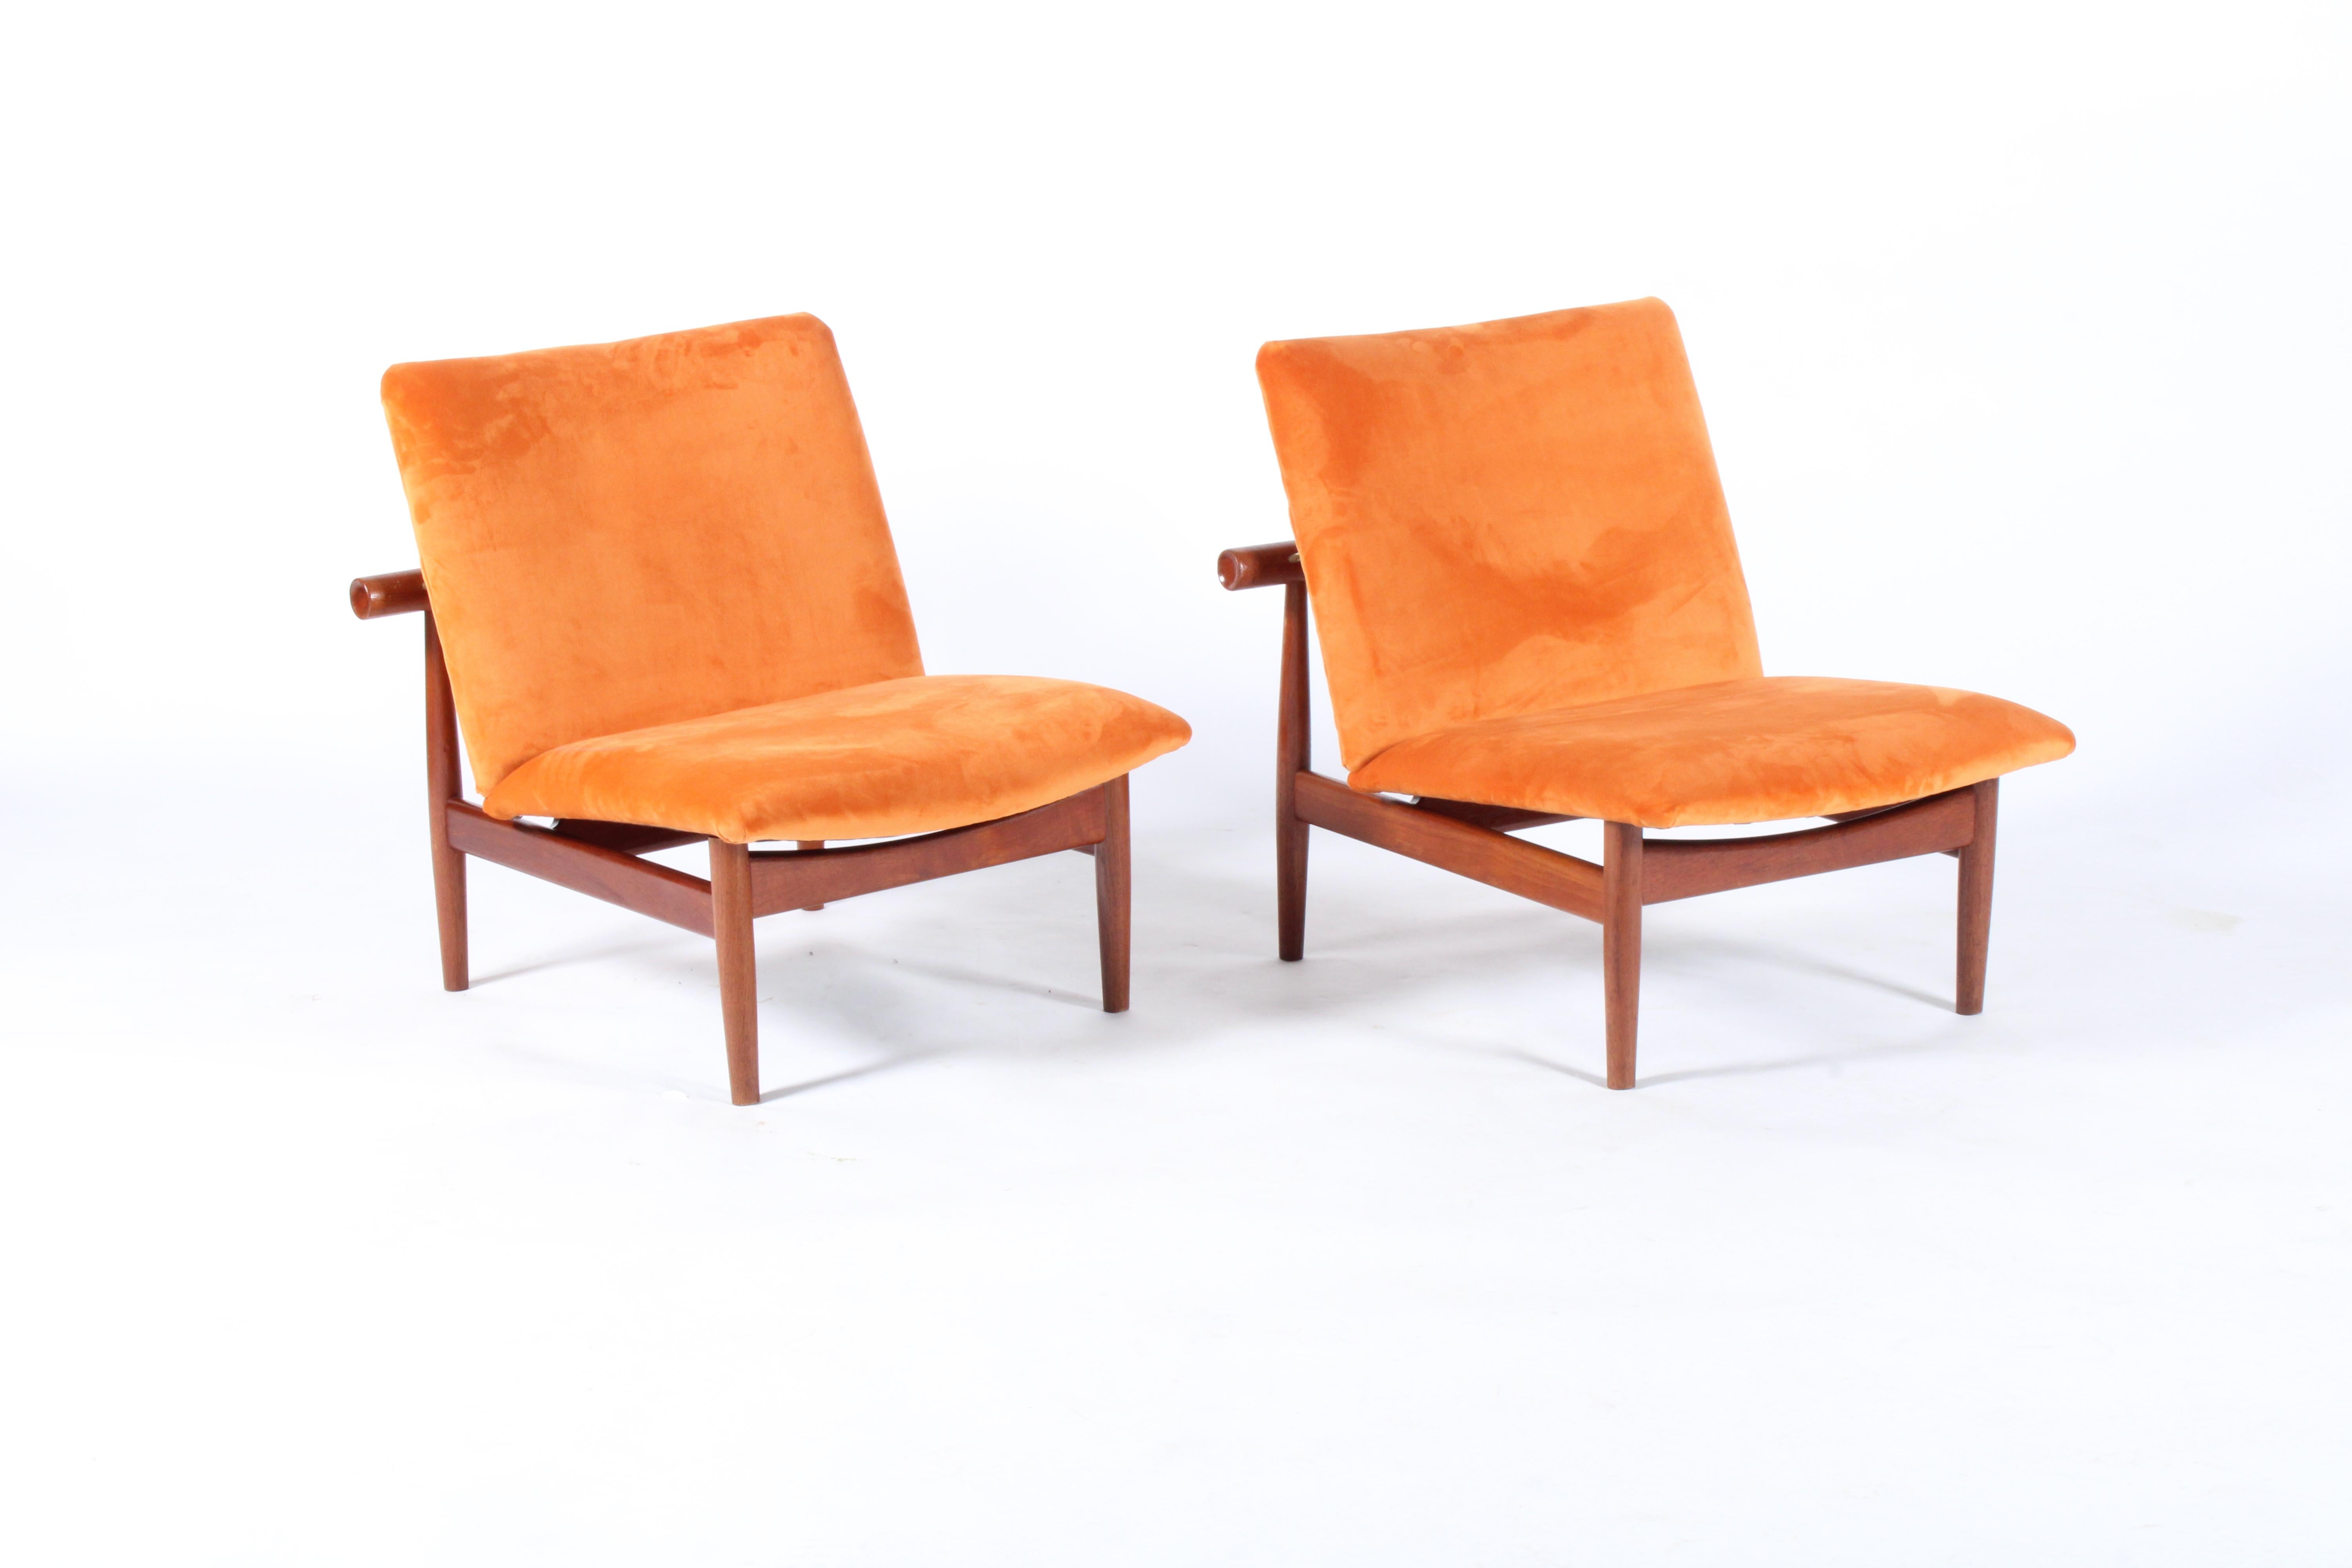 Pair of Iconic Danish Design Japan Chairs by Finn Juhl for France & Daverkosen 12